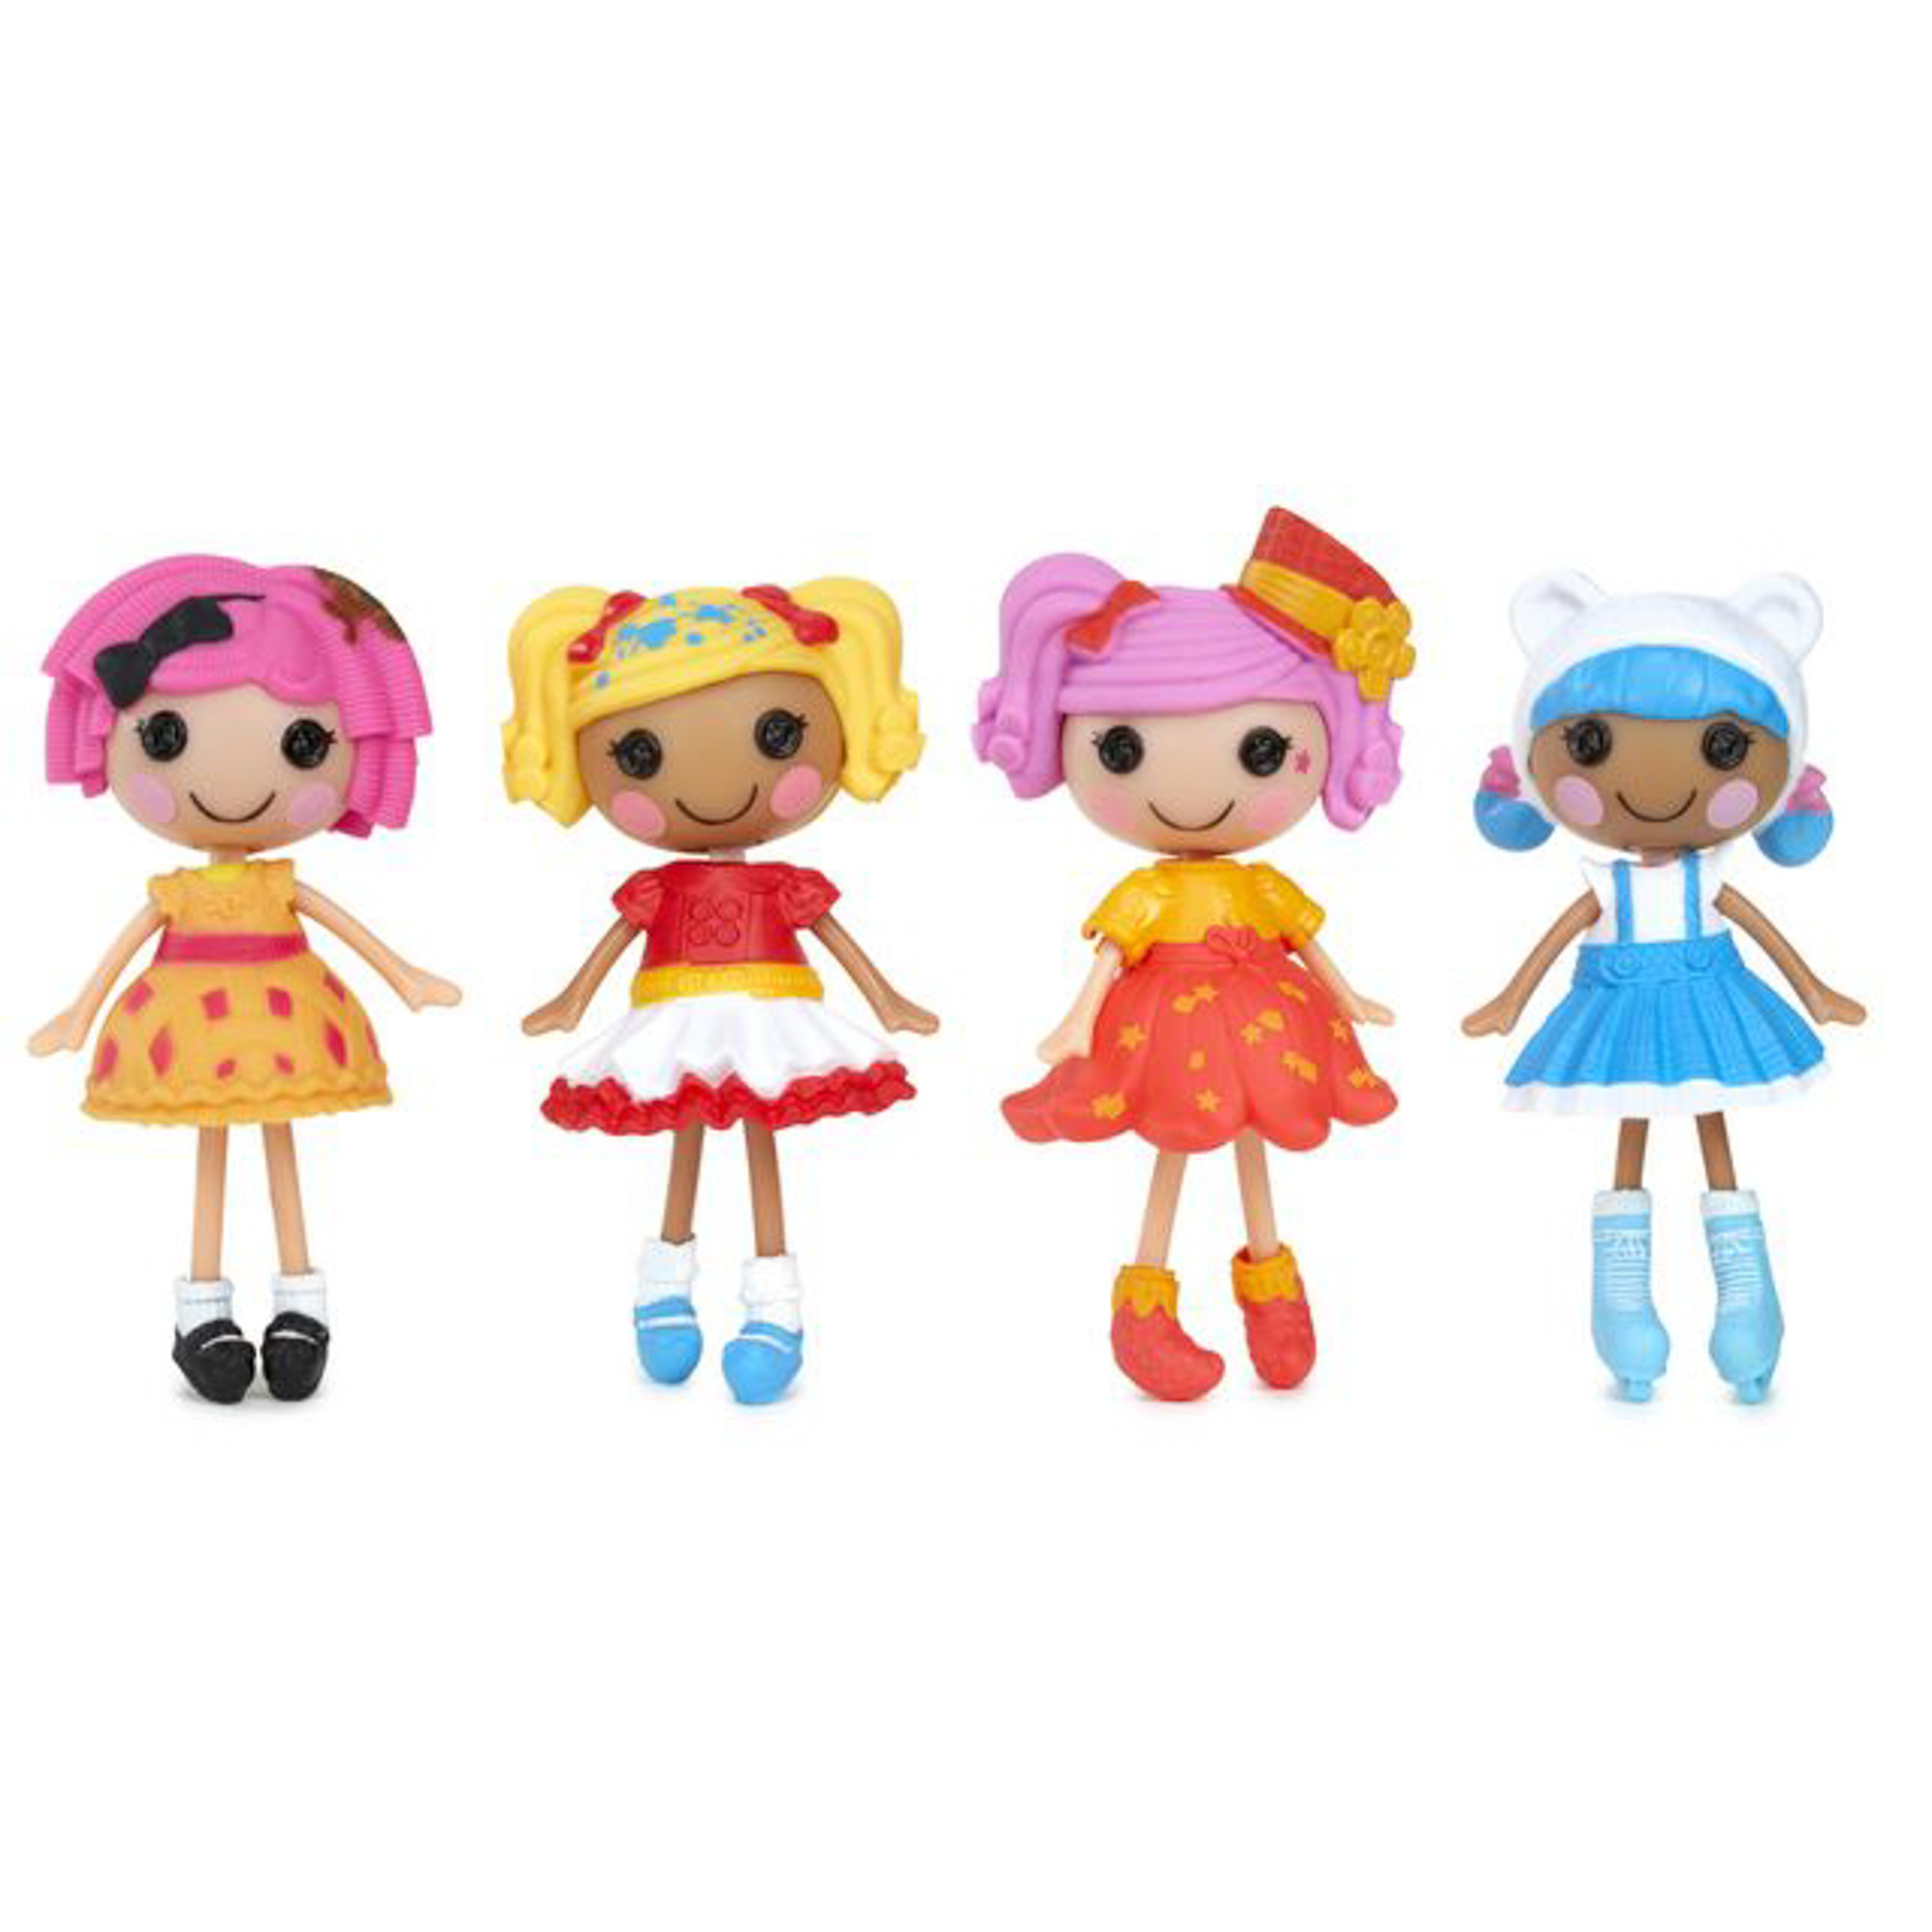 Игрушка кукла Mini Lalaloopsy с дополнительными аксессуарами, в ассортименте